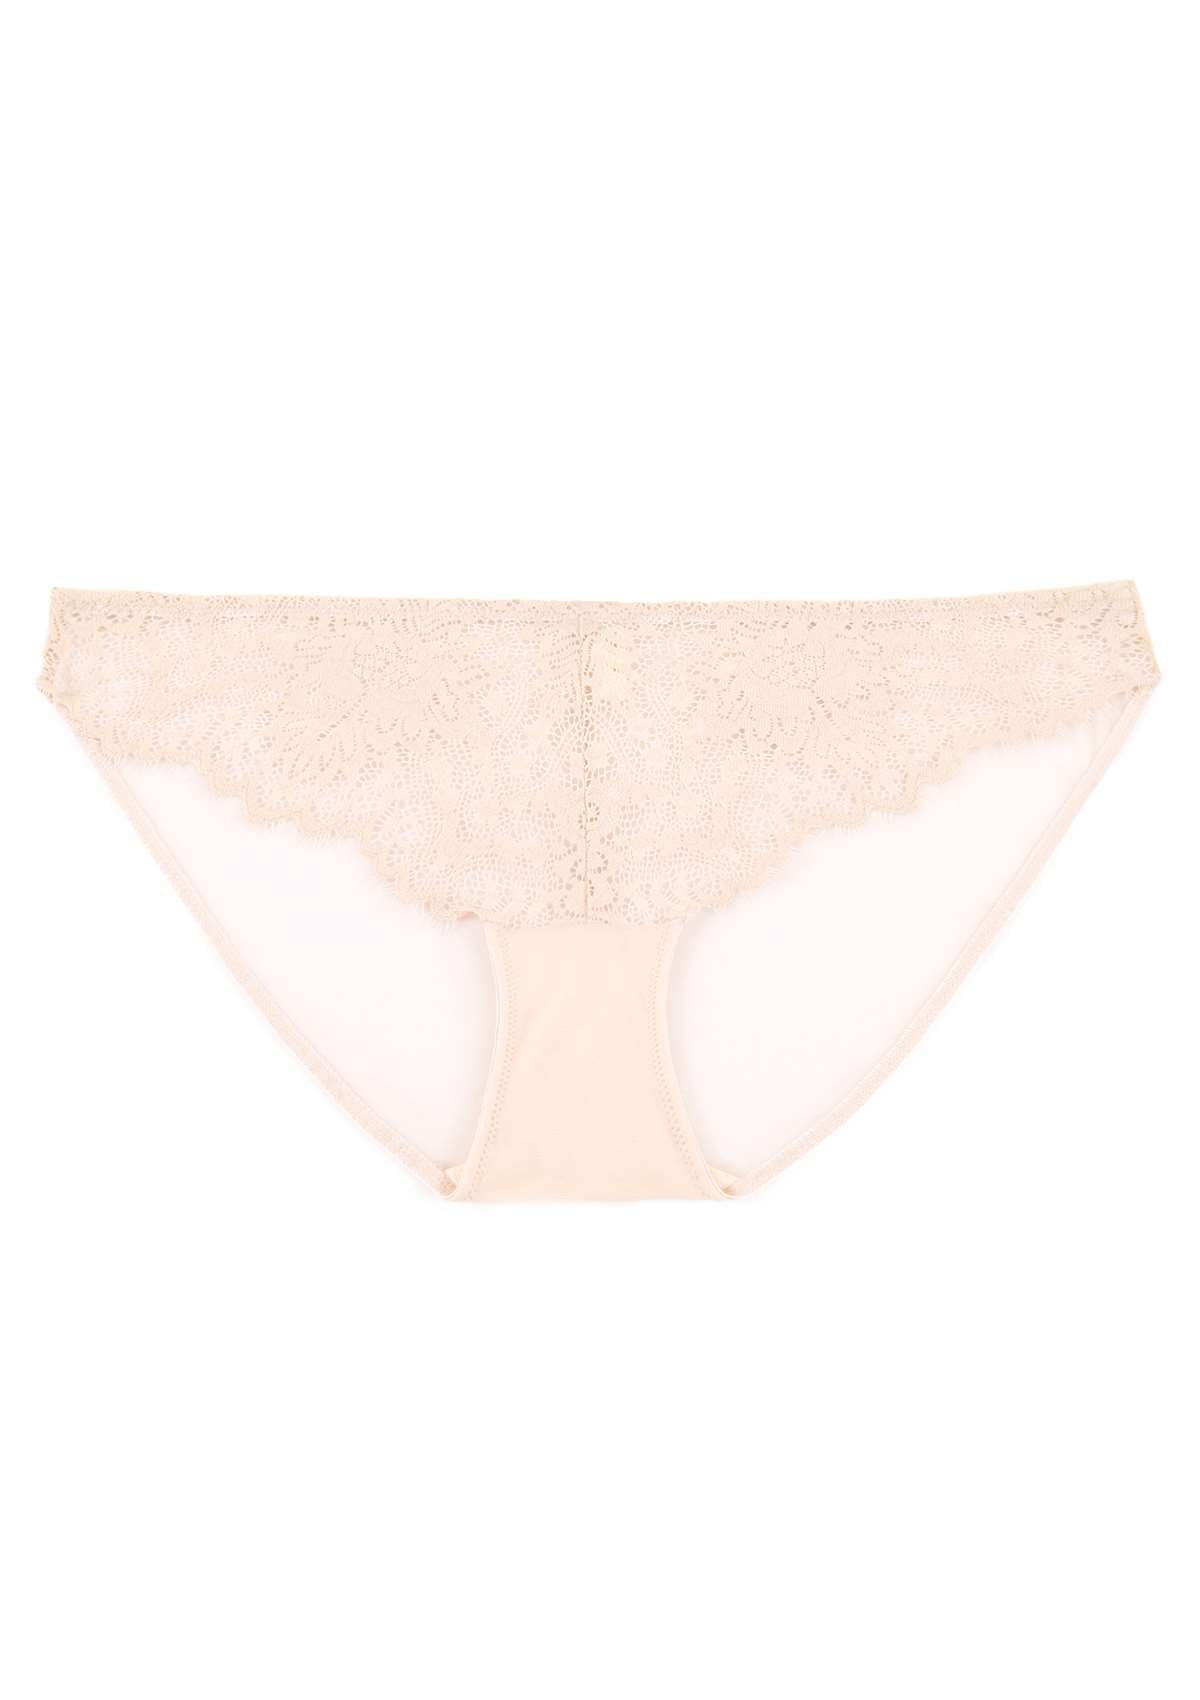 HSIA Sunflower Exquisite Lace Bikini Underwear - XXL / White